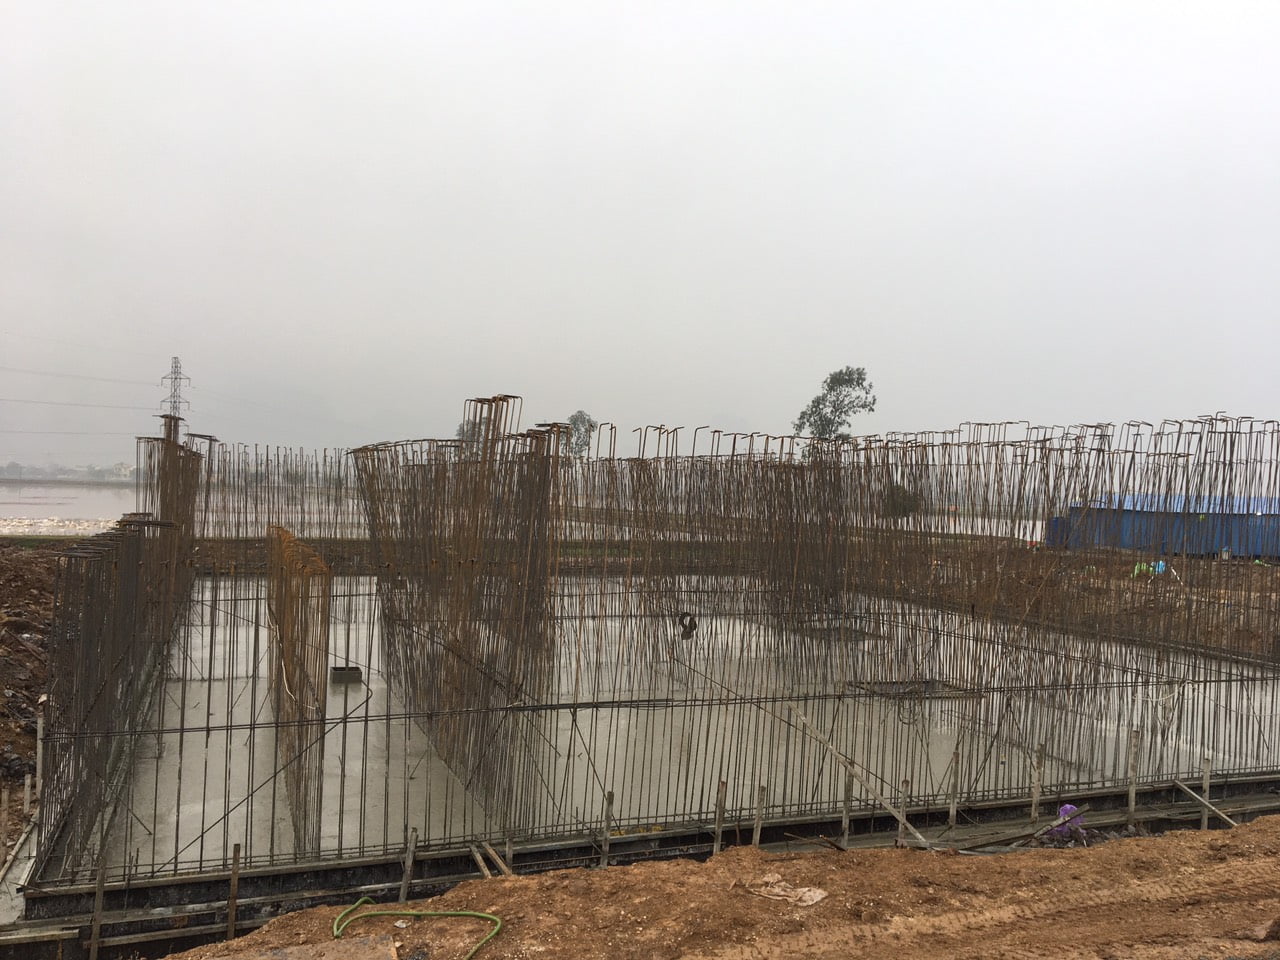 hoàn thành công tác đổ bê tông đáy bể xử lý trạm xử lý nước thải khu công nghiệp Thanh Liêm